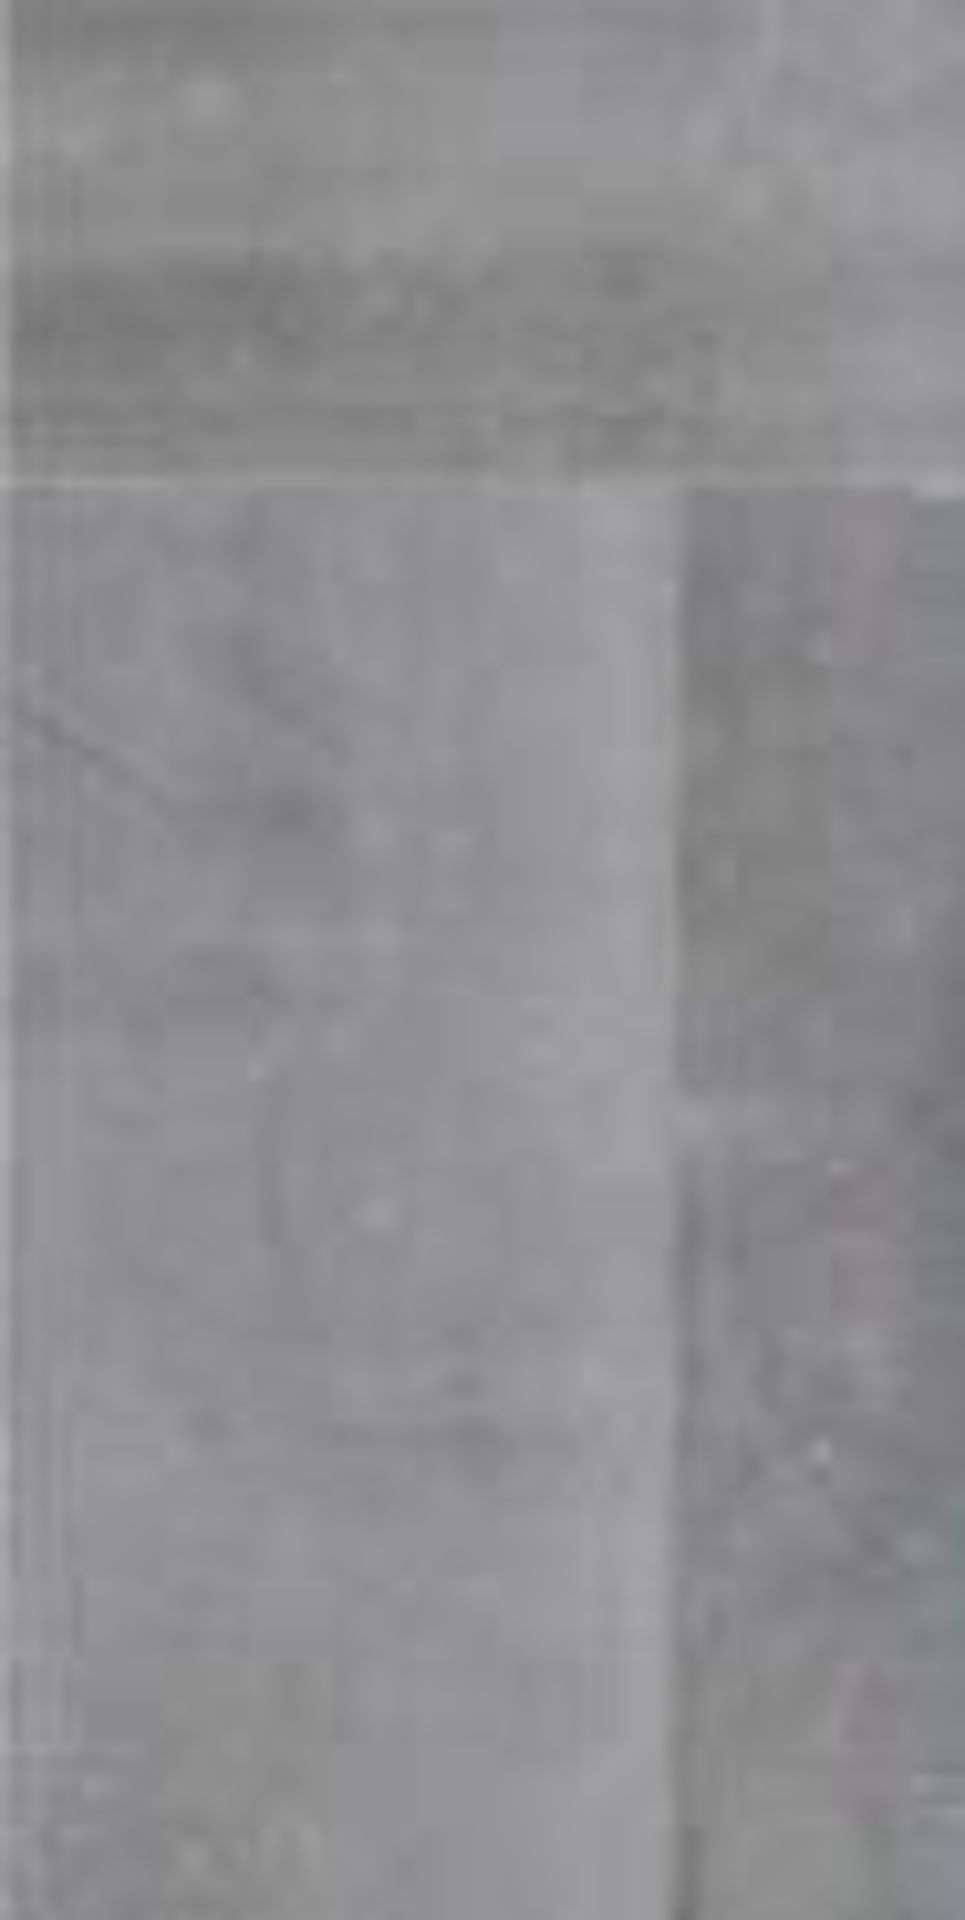 FUSION GRIS - CONCRETE/SCREED EFFECT PORCELAIN TILES - 60 X 120 CM 17 BOXES (24.48 SQM) - Image 3 of 3